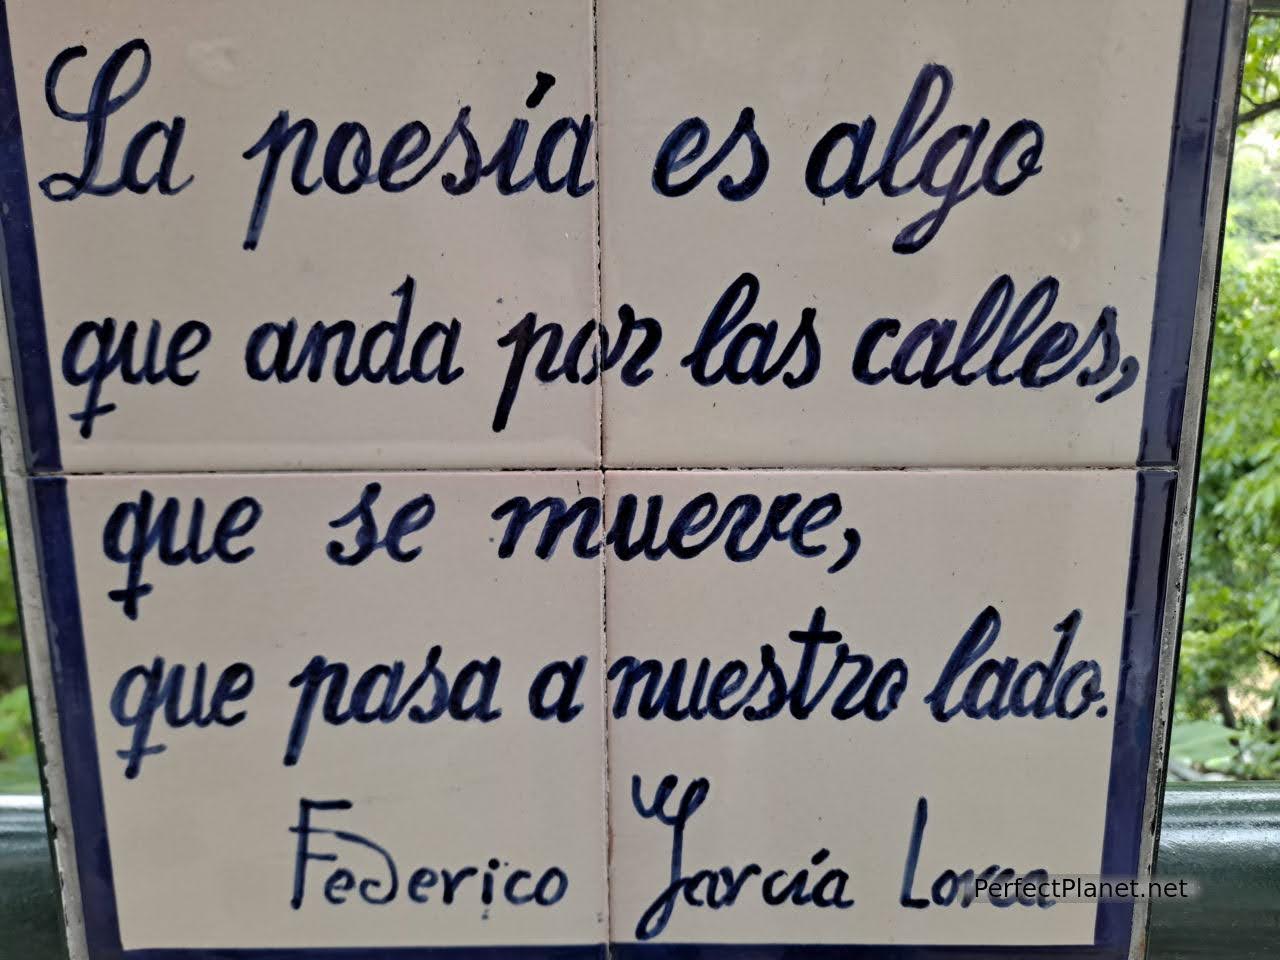 Lorca poem